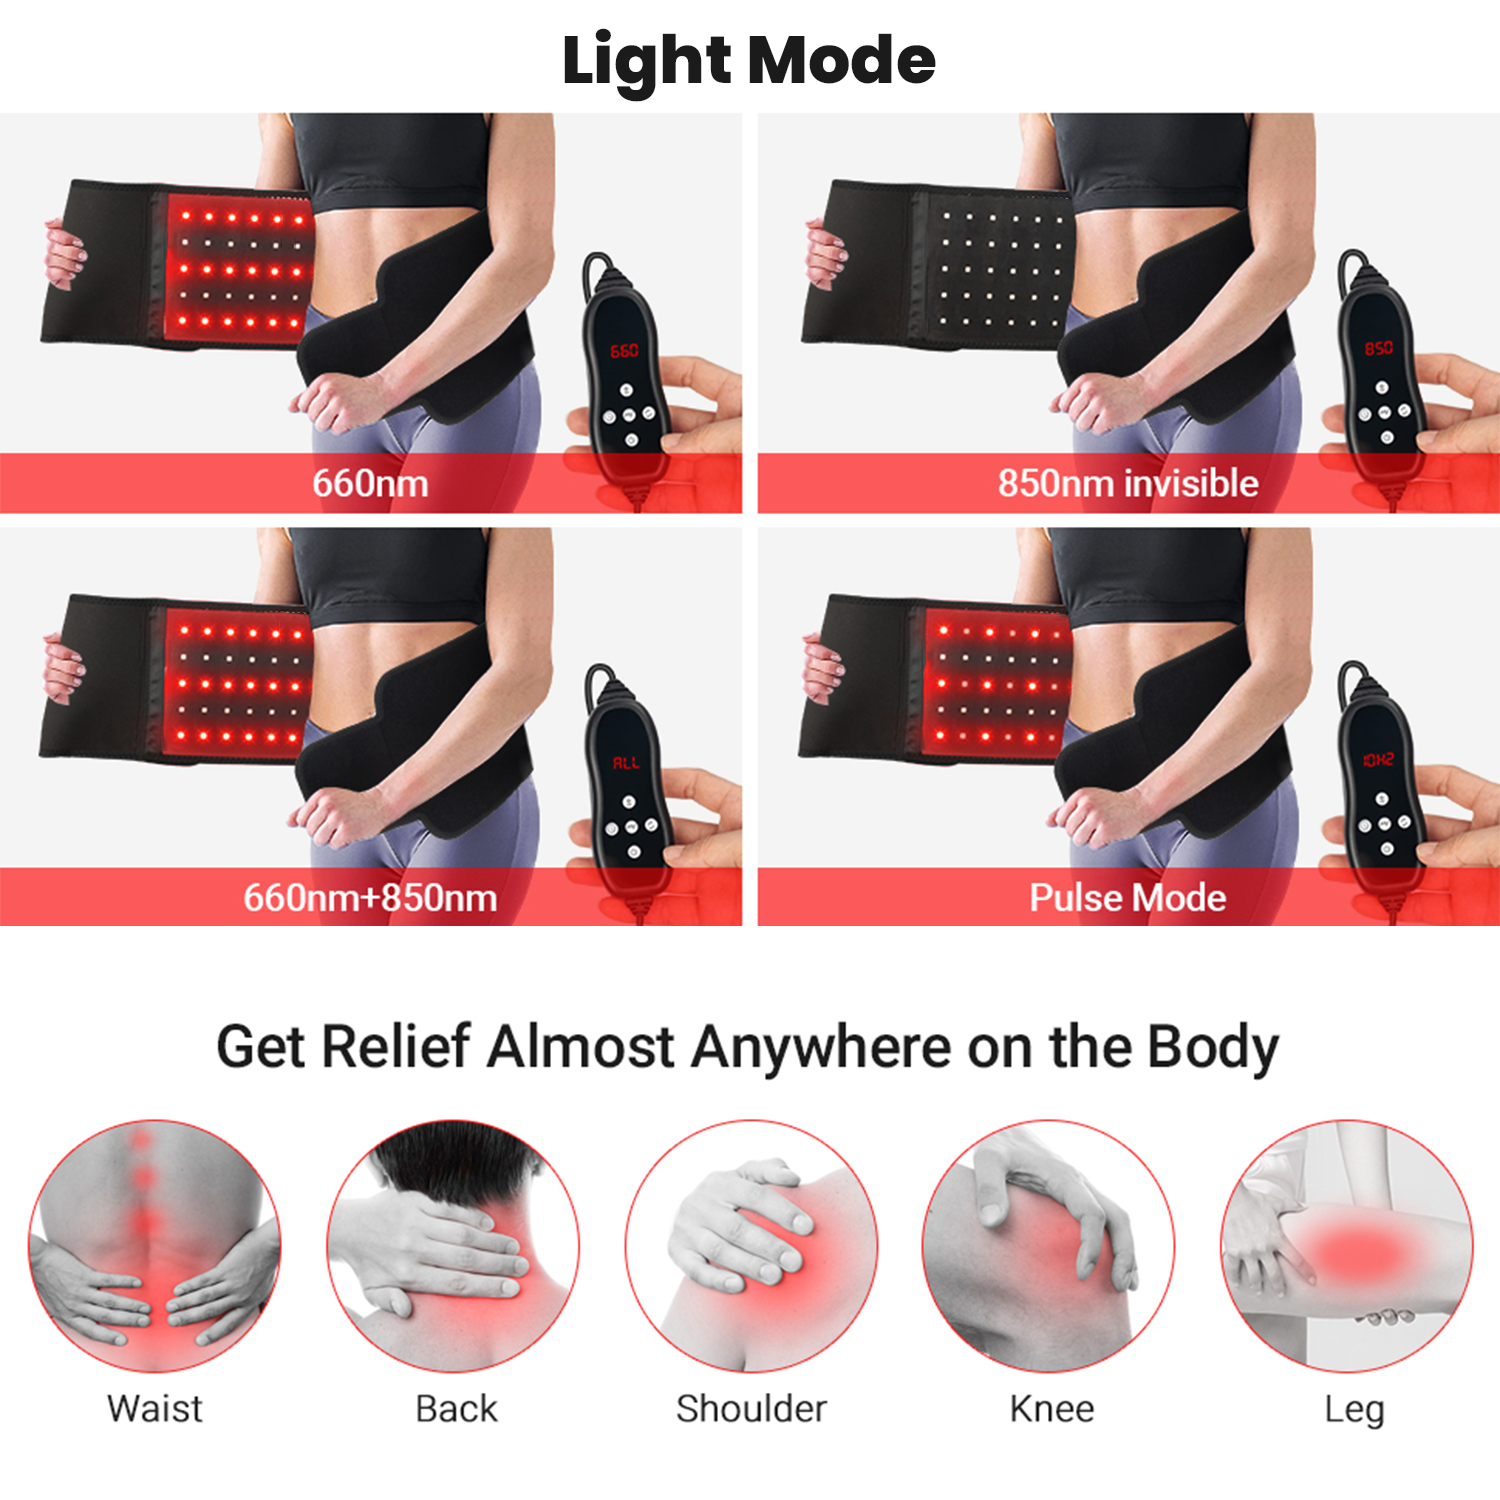 rødt lys terapi for muskelsmerter